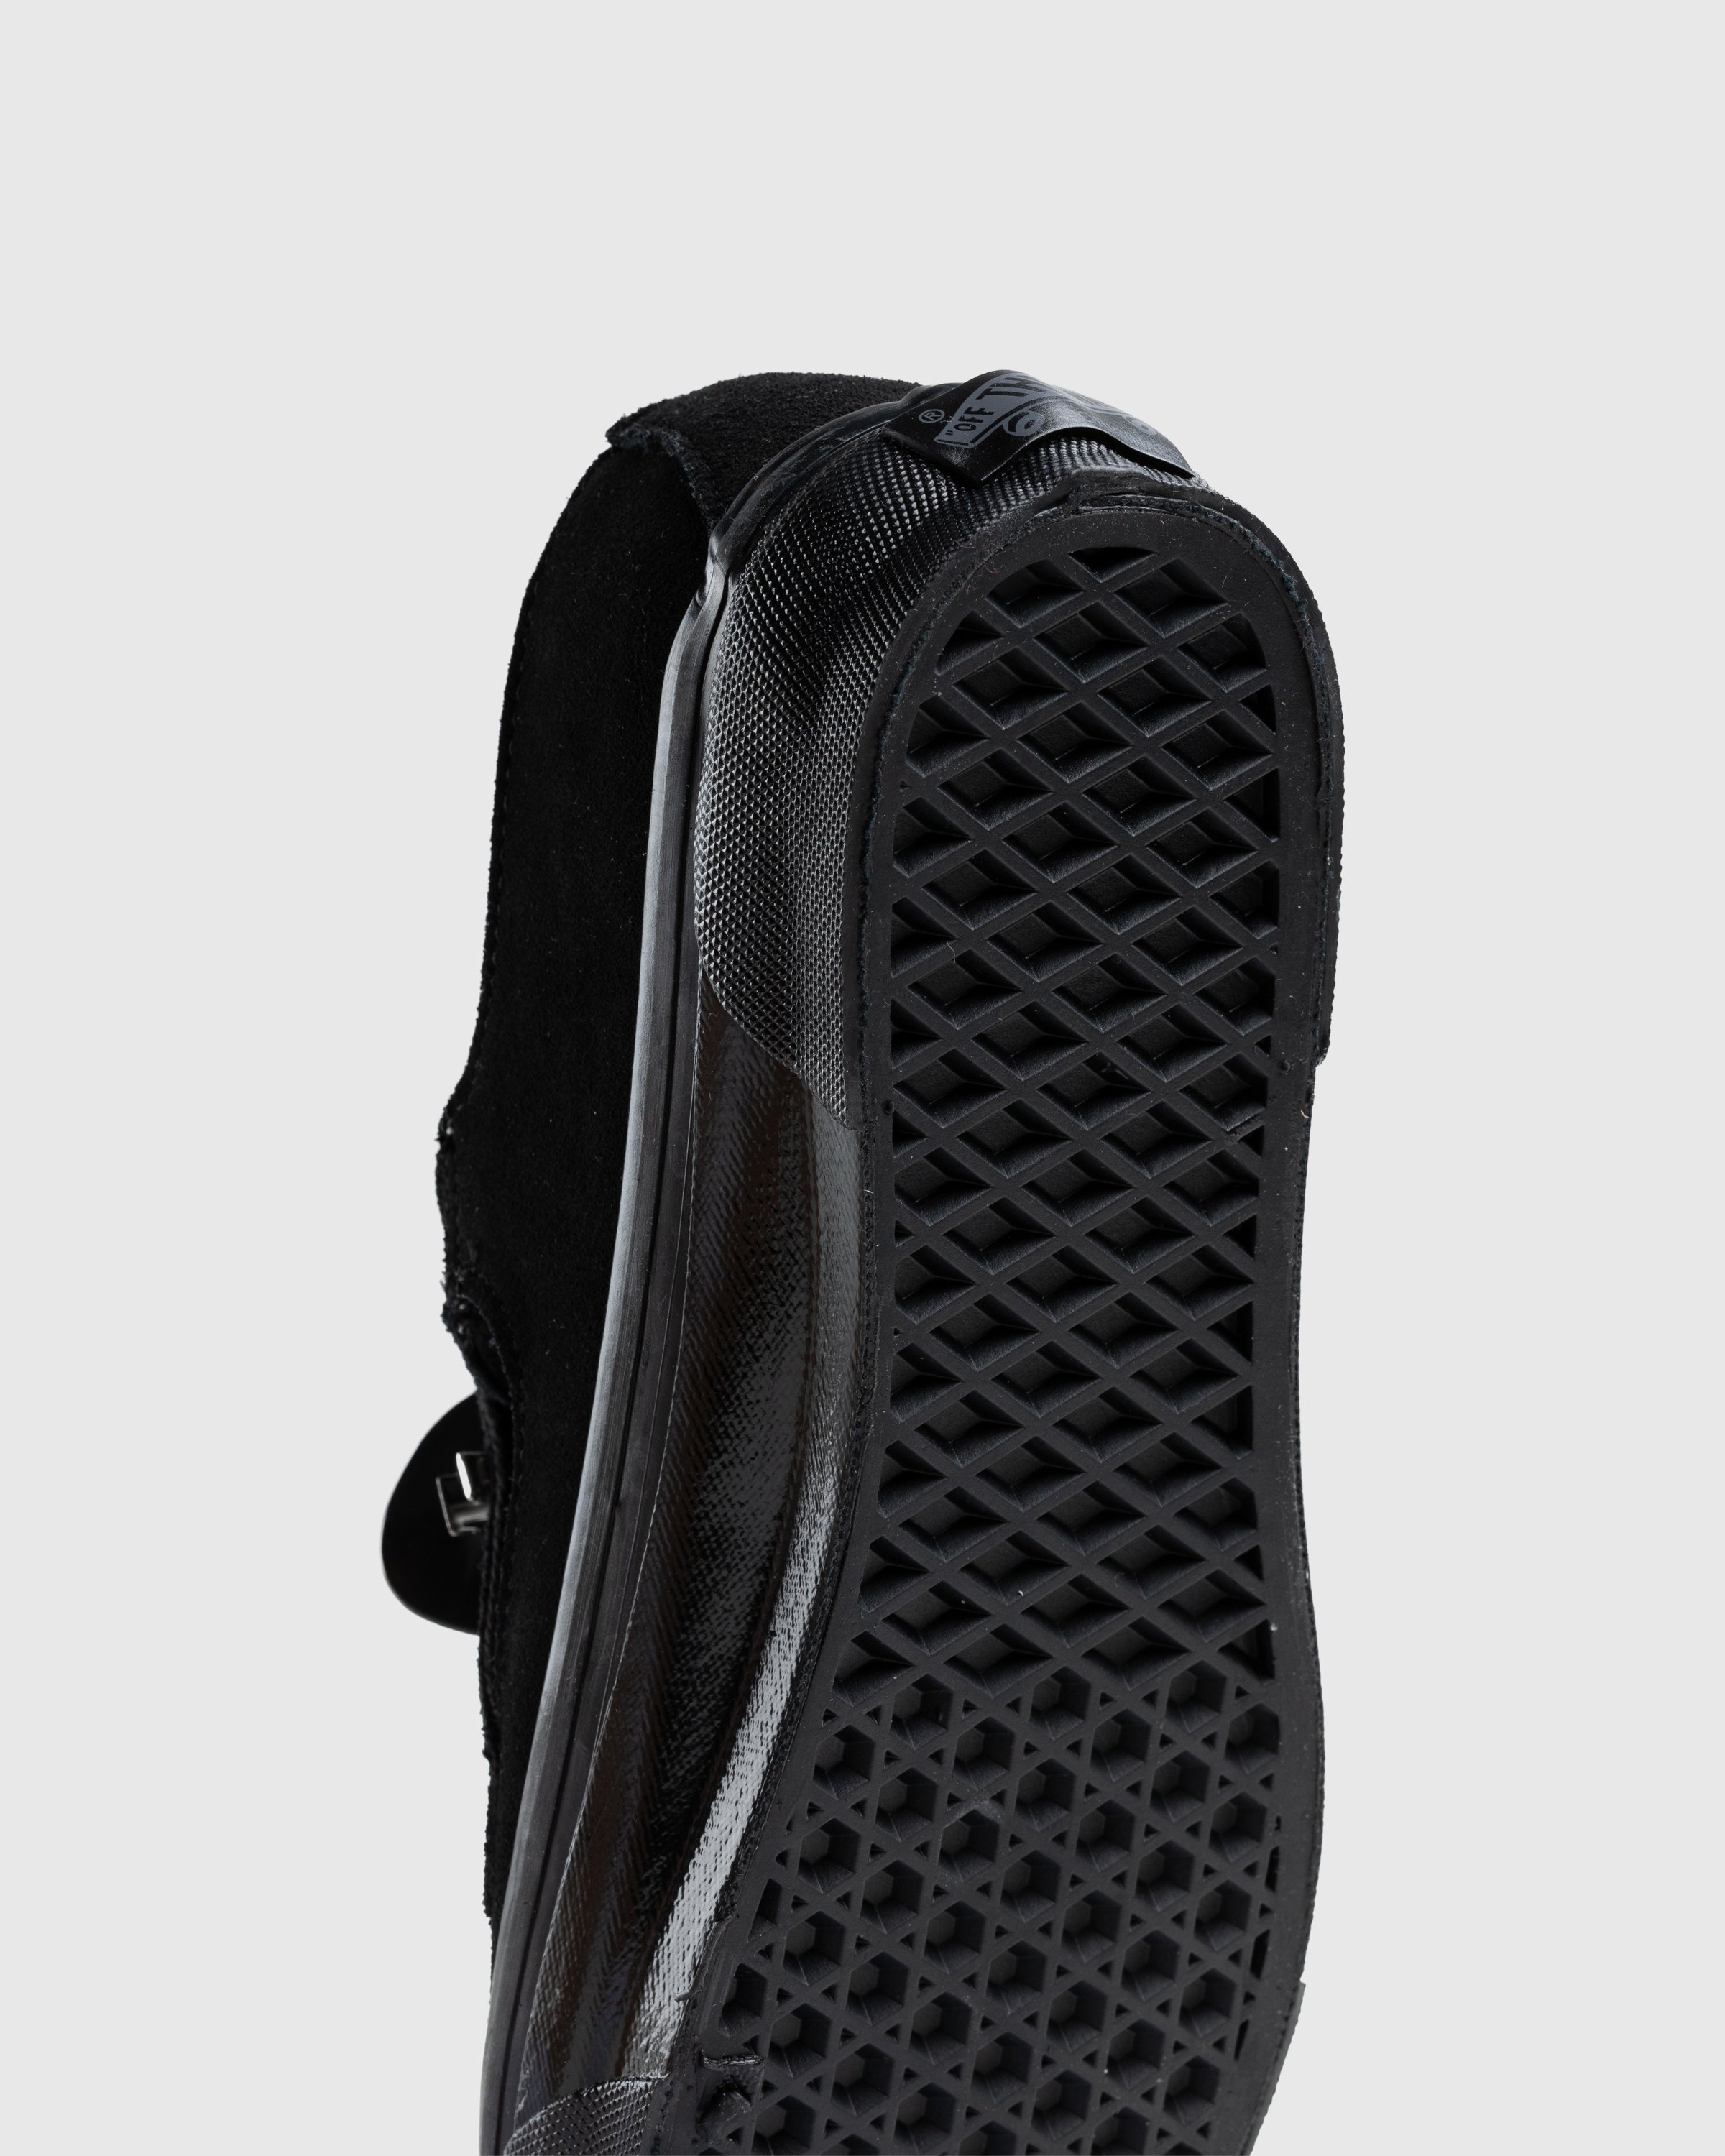 Vans - OG Style 93 LX Black - Footwear - Black - Image 9